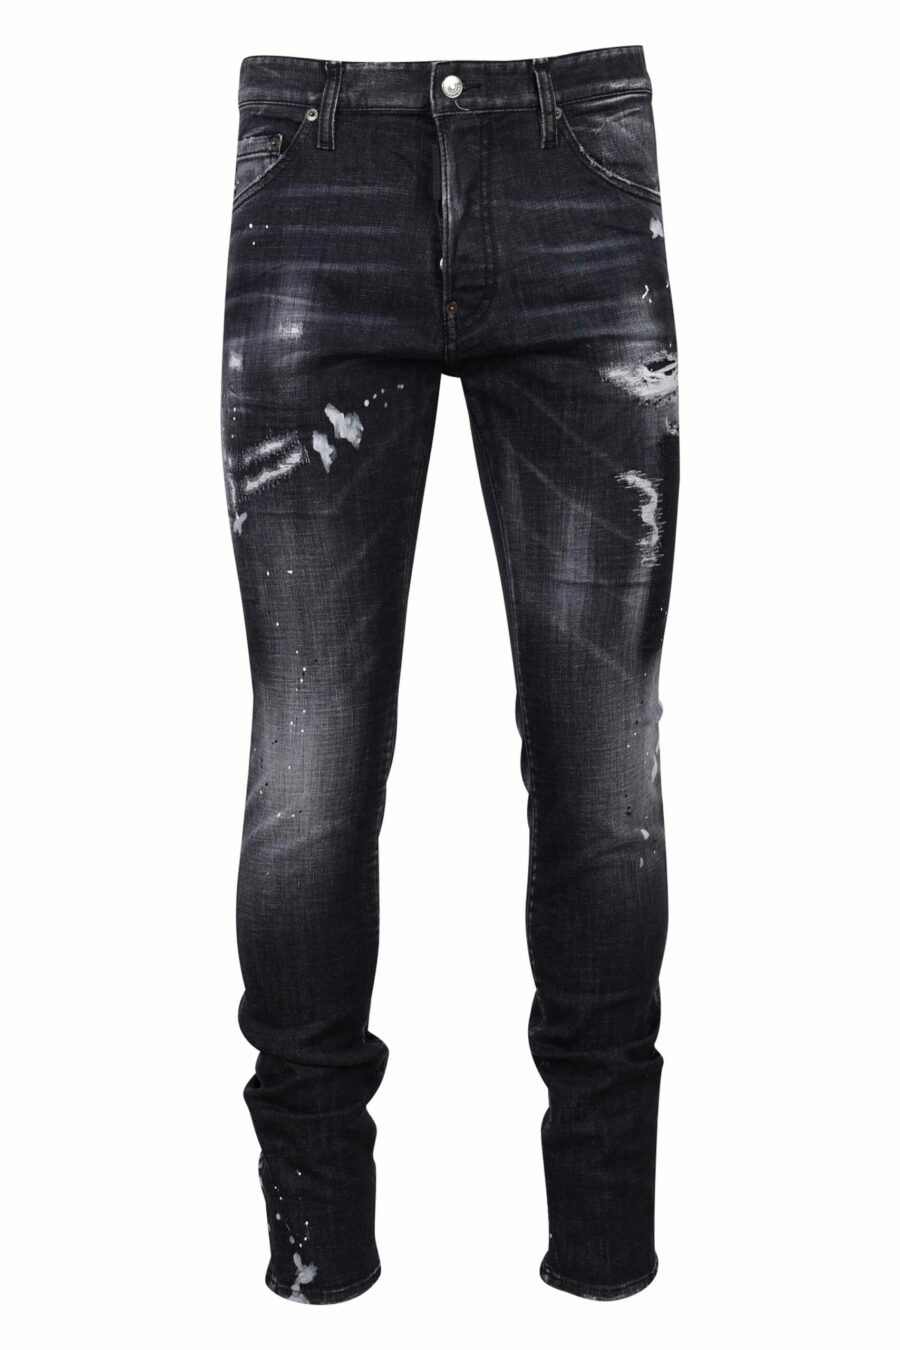 Schwarze "cool guy jean" Jeans mit Rissen und ausgefranst - 8054148300753 skaliert